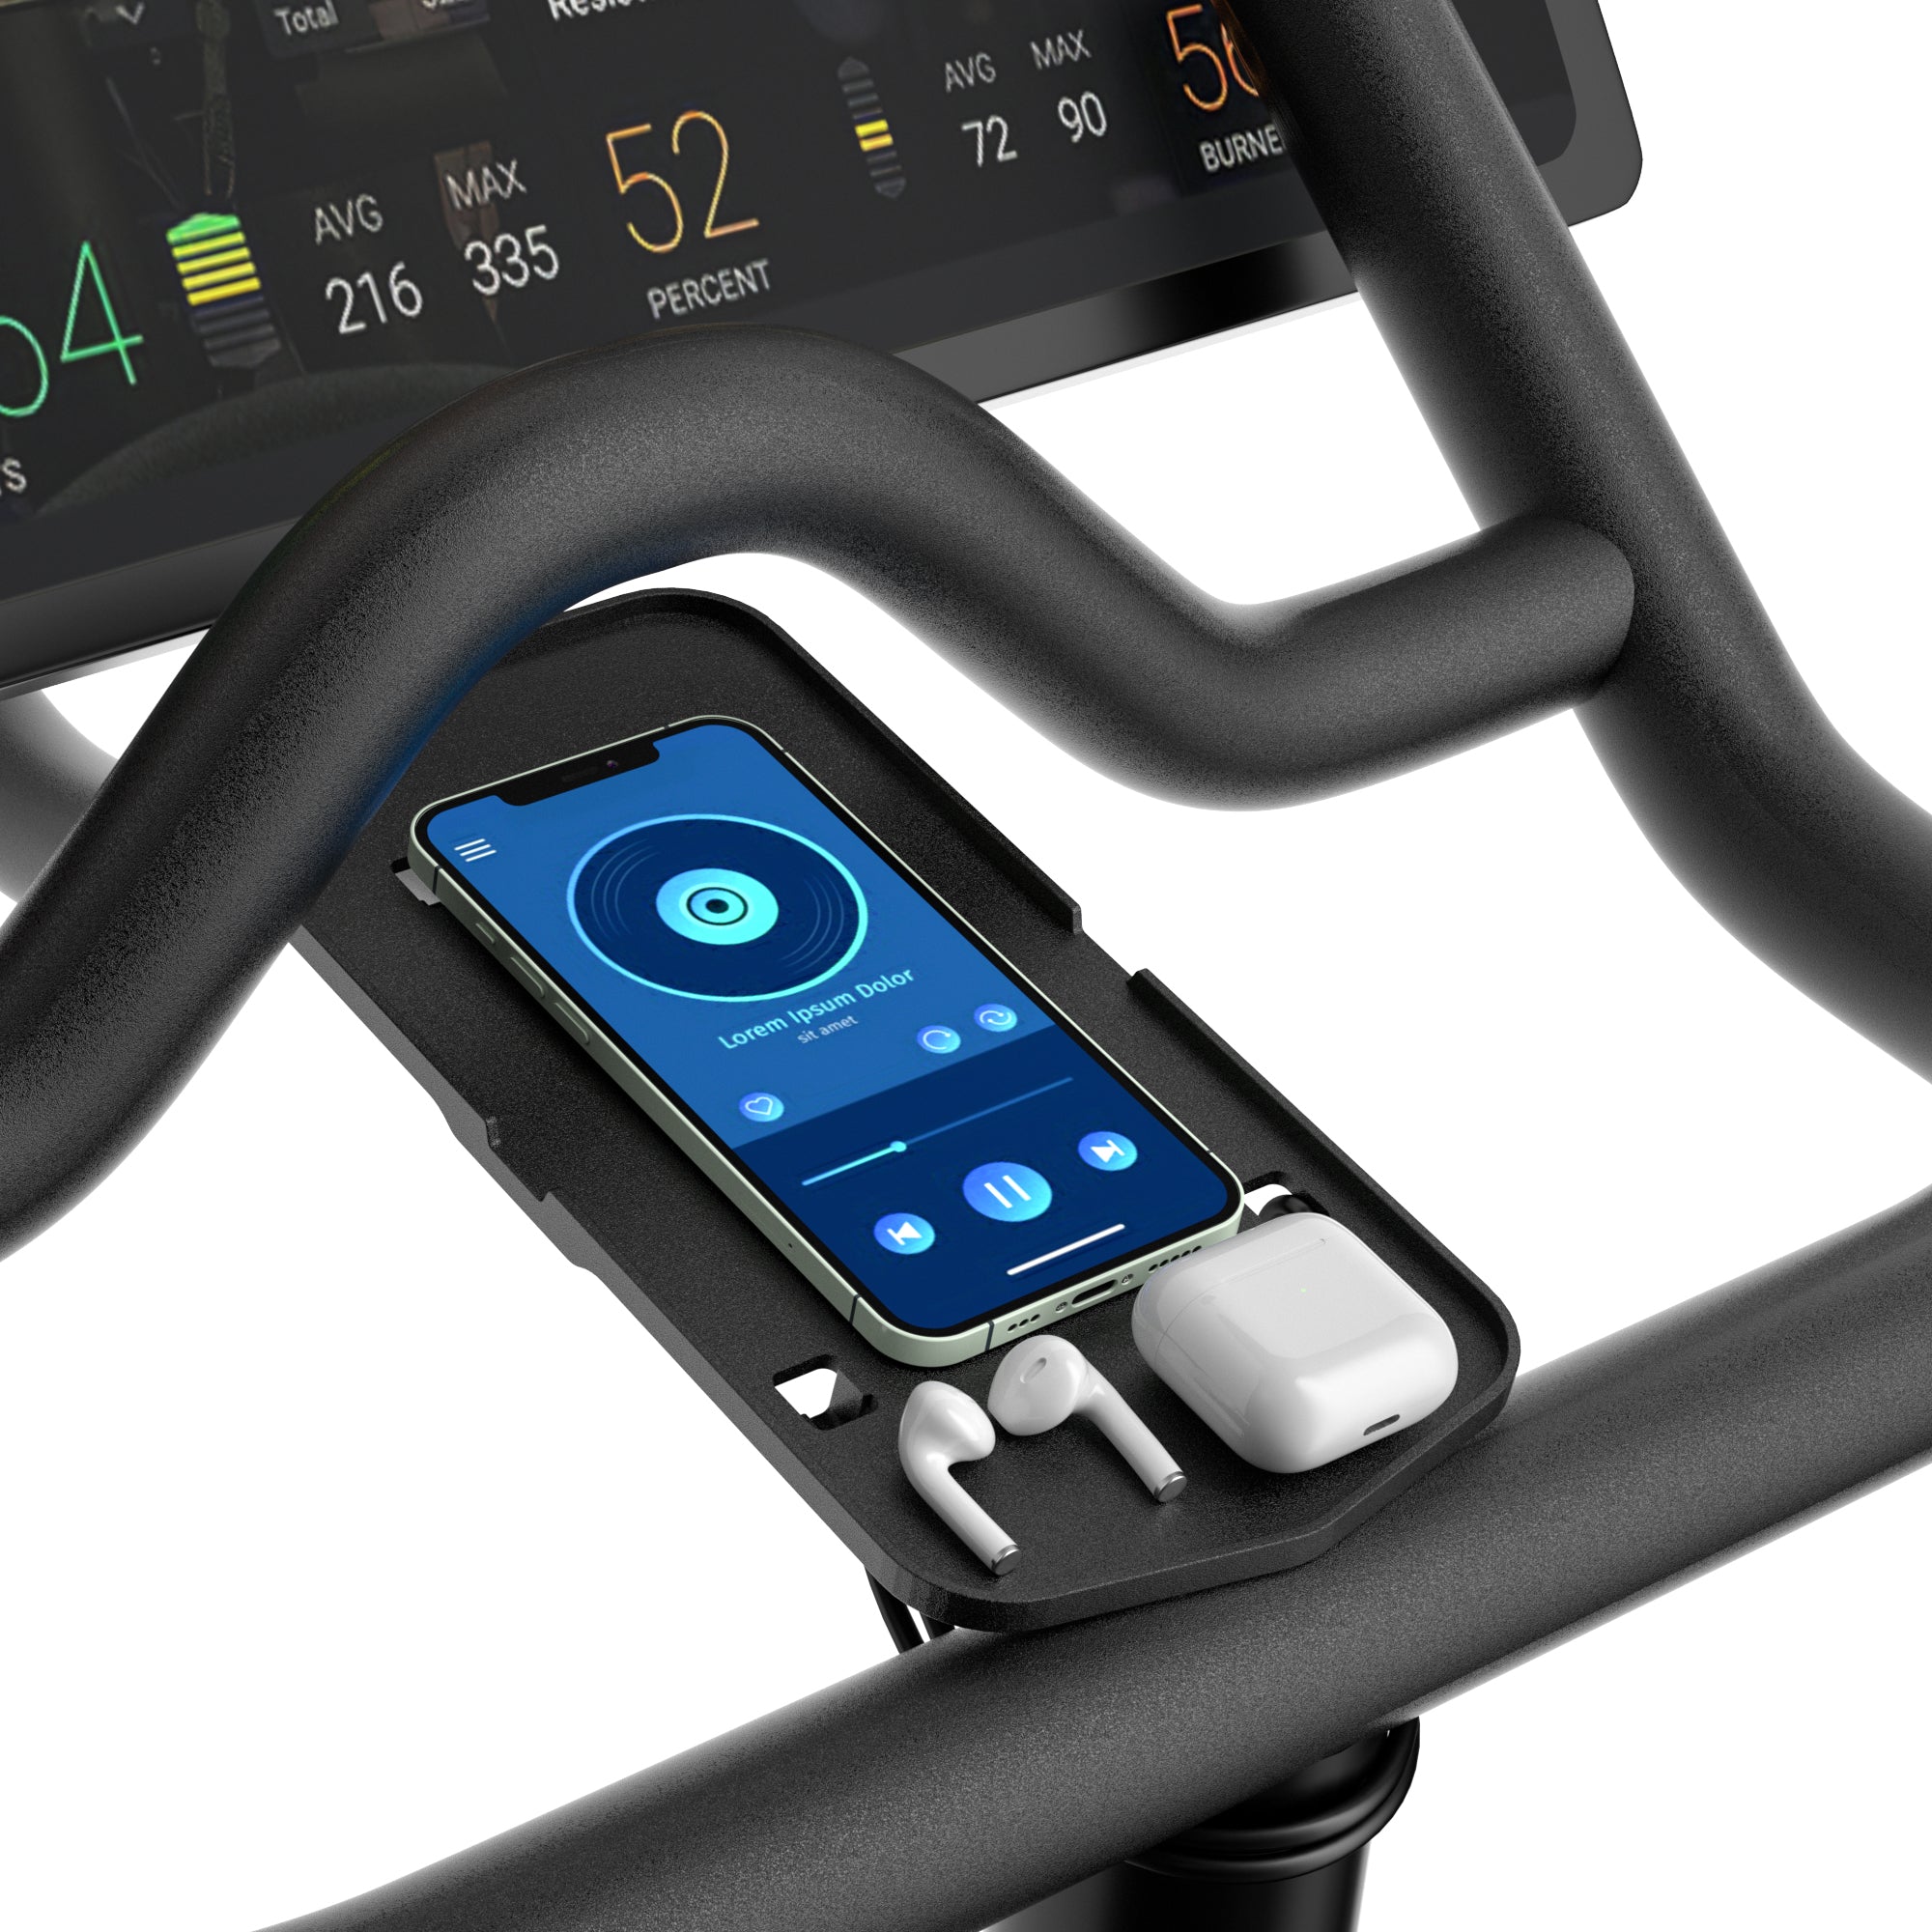 COOLWUFAN Phone Mount Bracket Holder for Spinning Bike & Bike +,Handlebar Stable Anti-Slippery Phone Holder, Phone Holder for Bicycle, Accessories for Spinning (Easy Installation)